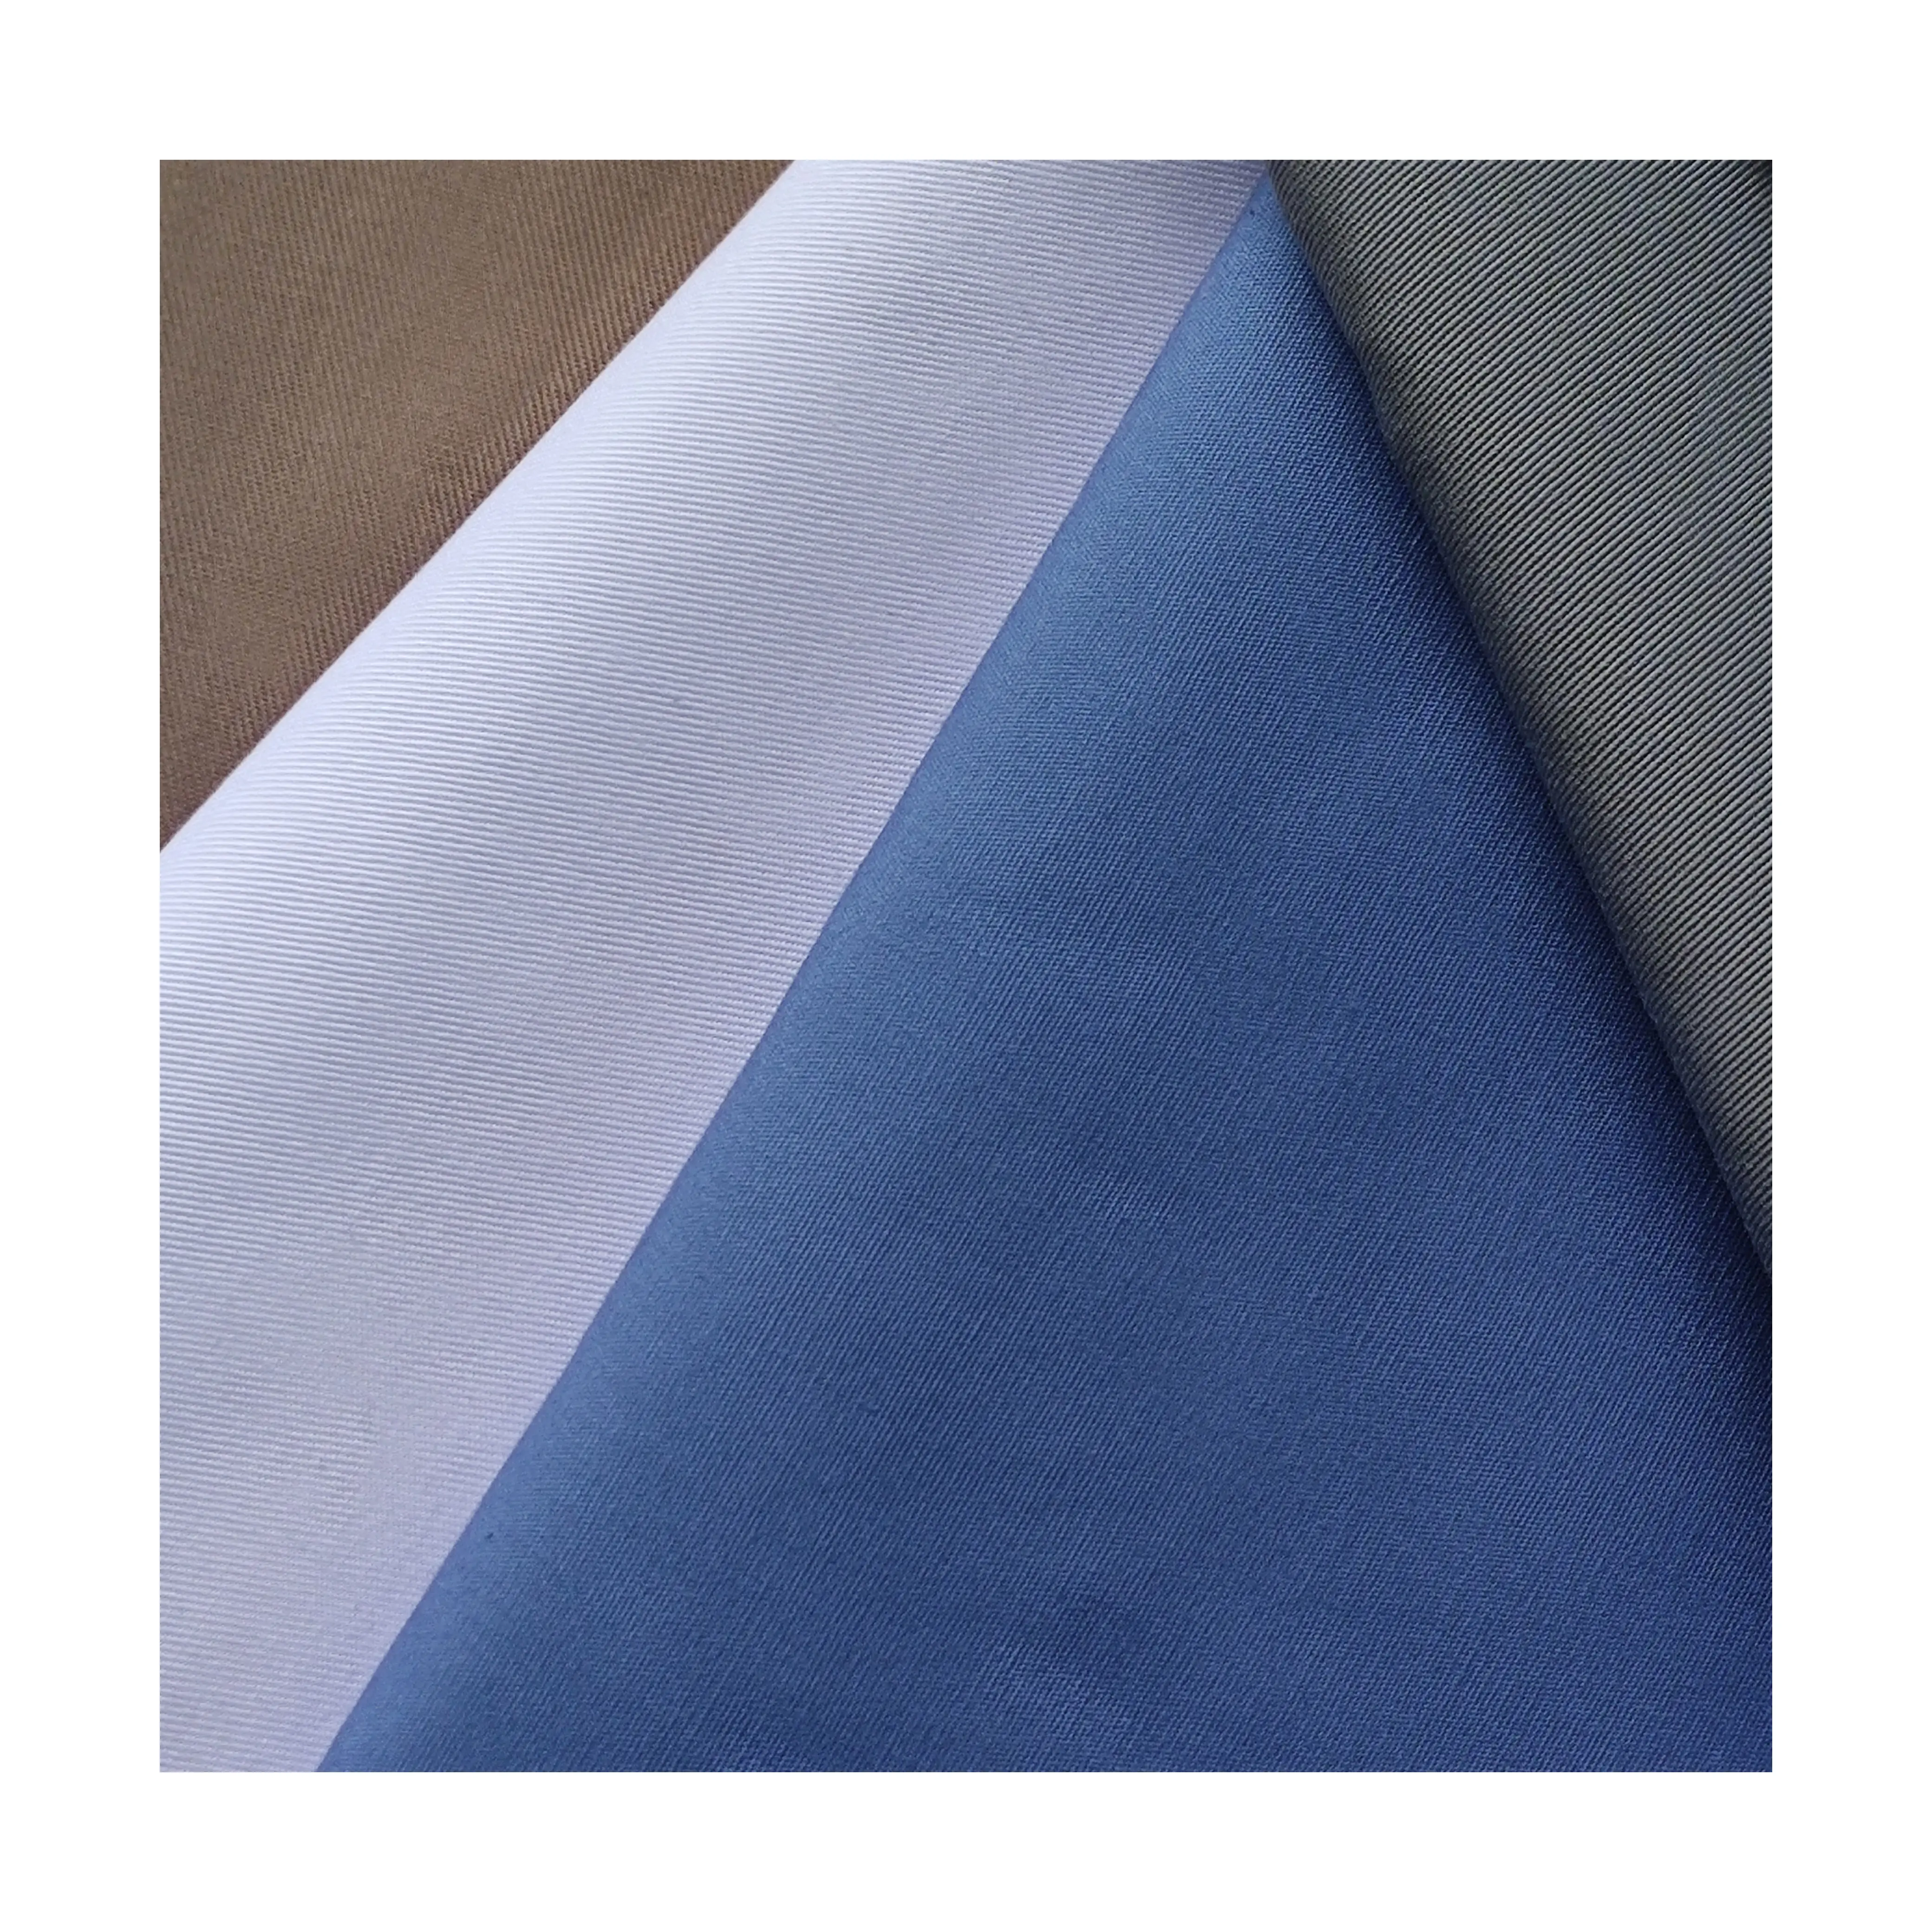 Tela de sarga de algodón tc, 80/20 poliéster/algodón, para uniforme, ropa de trabajo